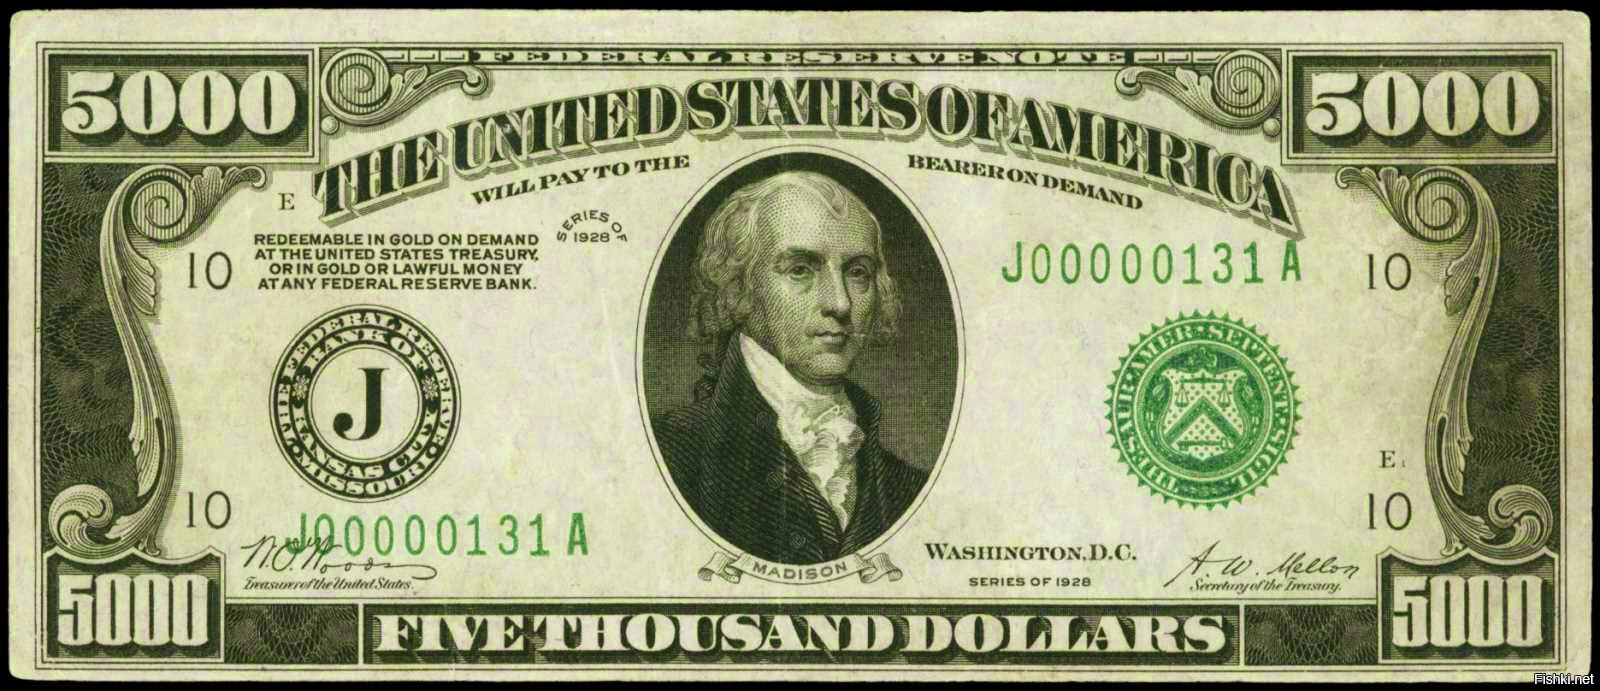 как выглядит доллар сша